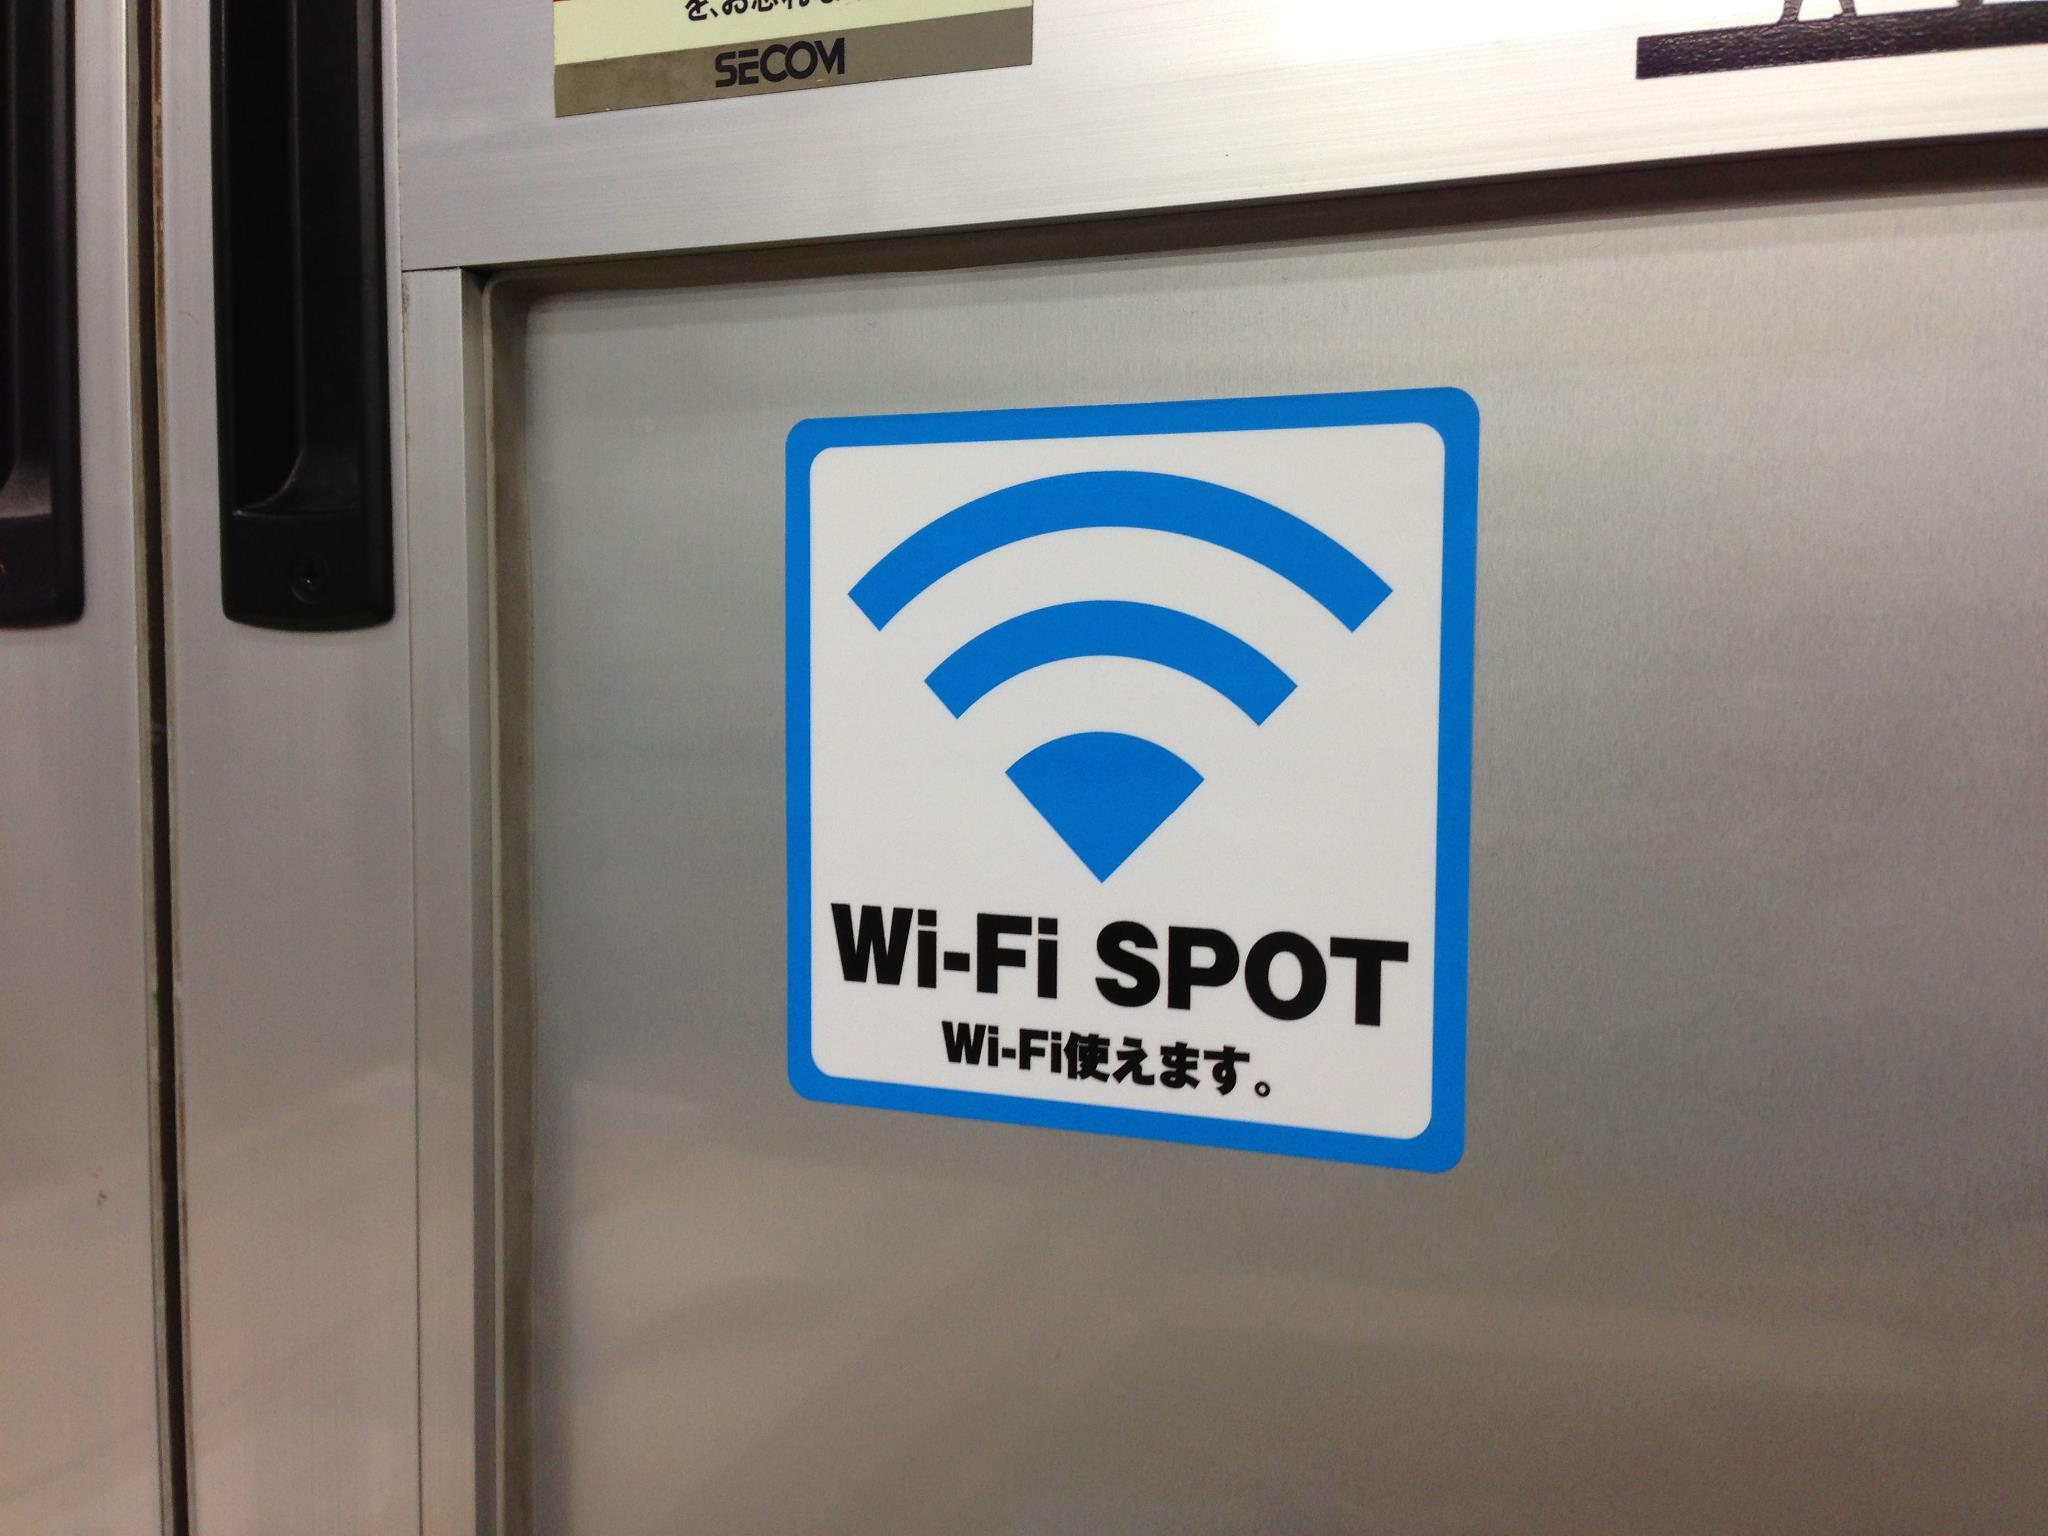 Wi-Fi使えます表示ステッカー001 x 5枚セット - ウインドウを閉じる